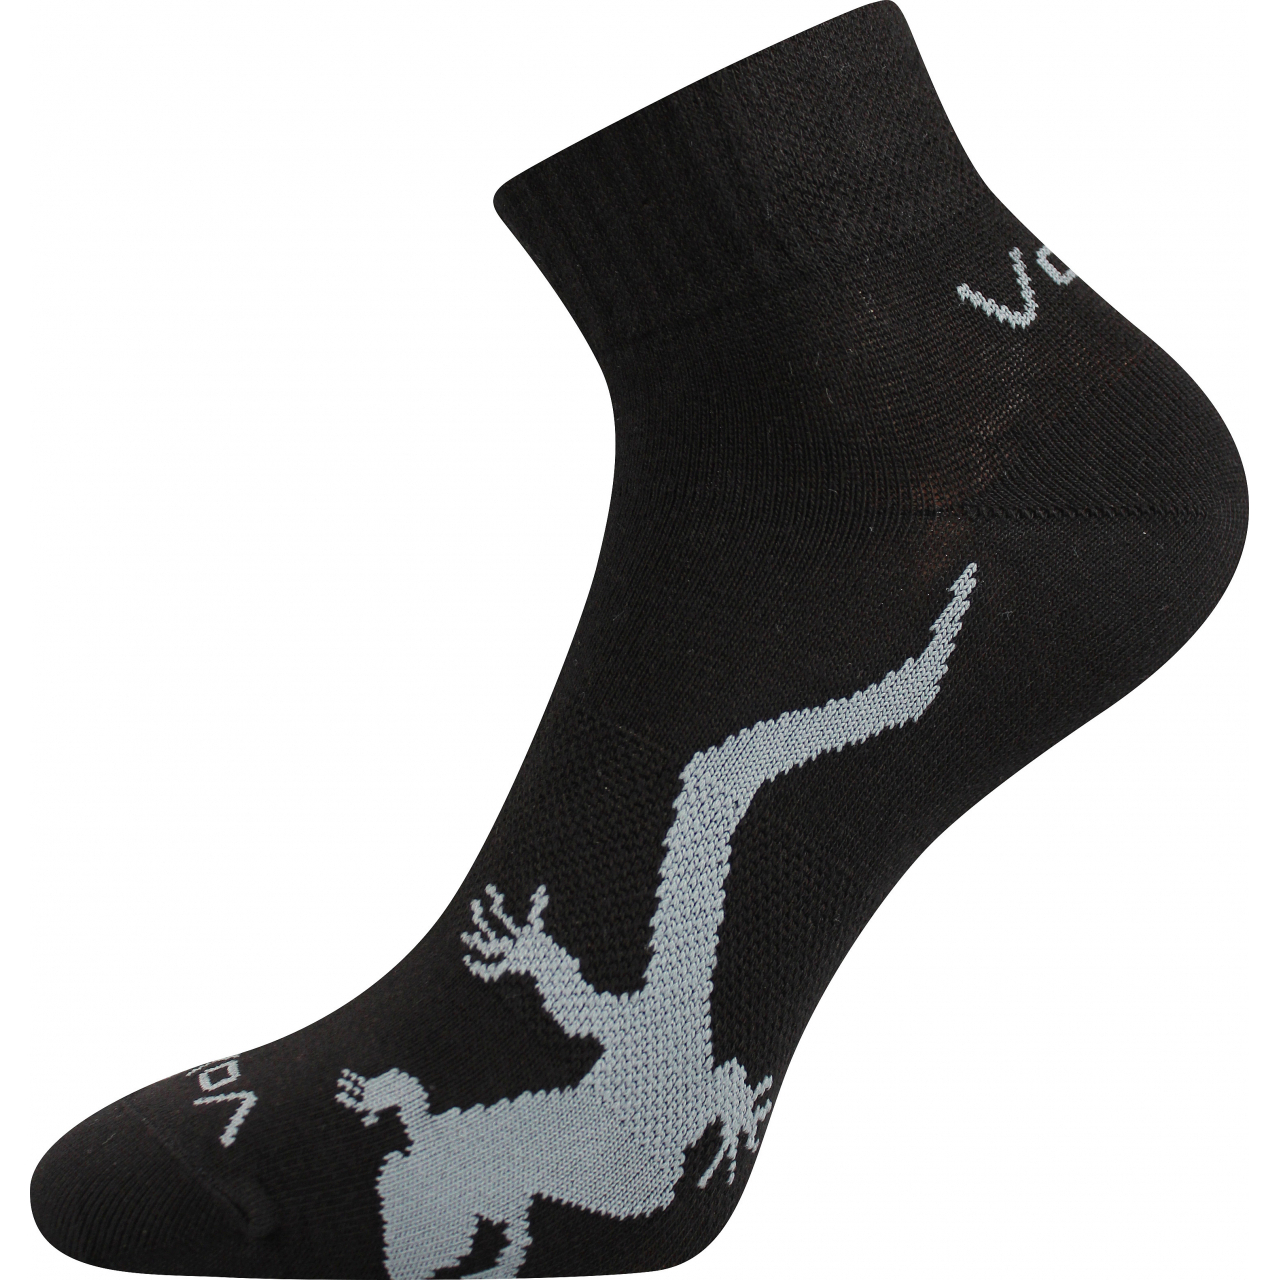 Ponožky dámské Voxx Trinity - černé, 35-38